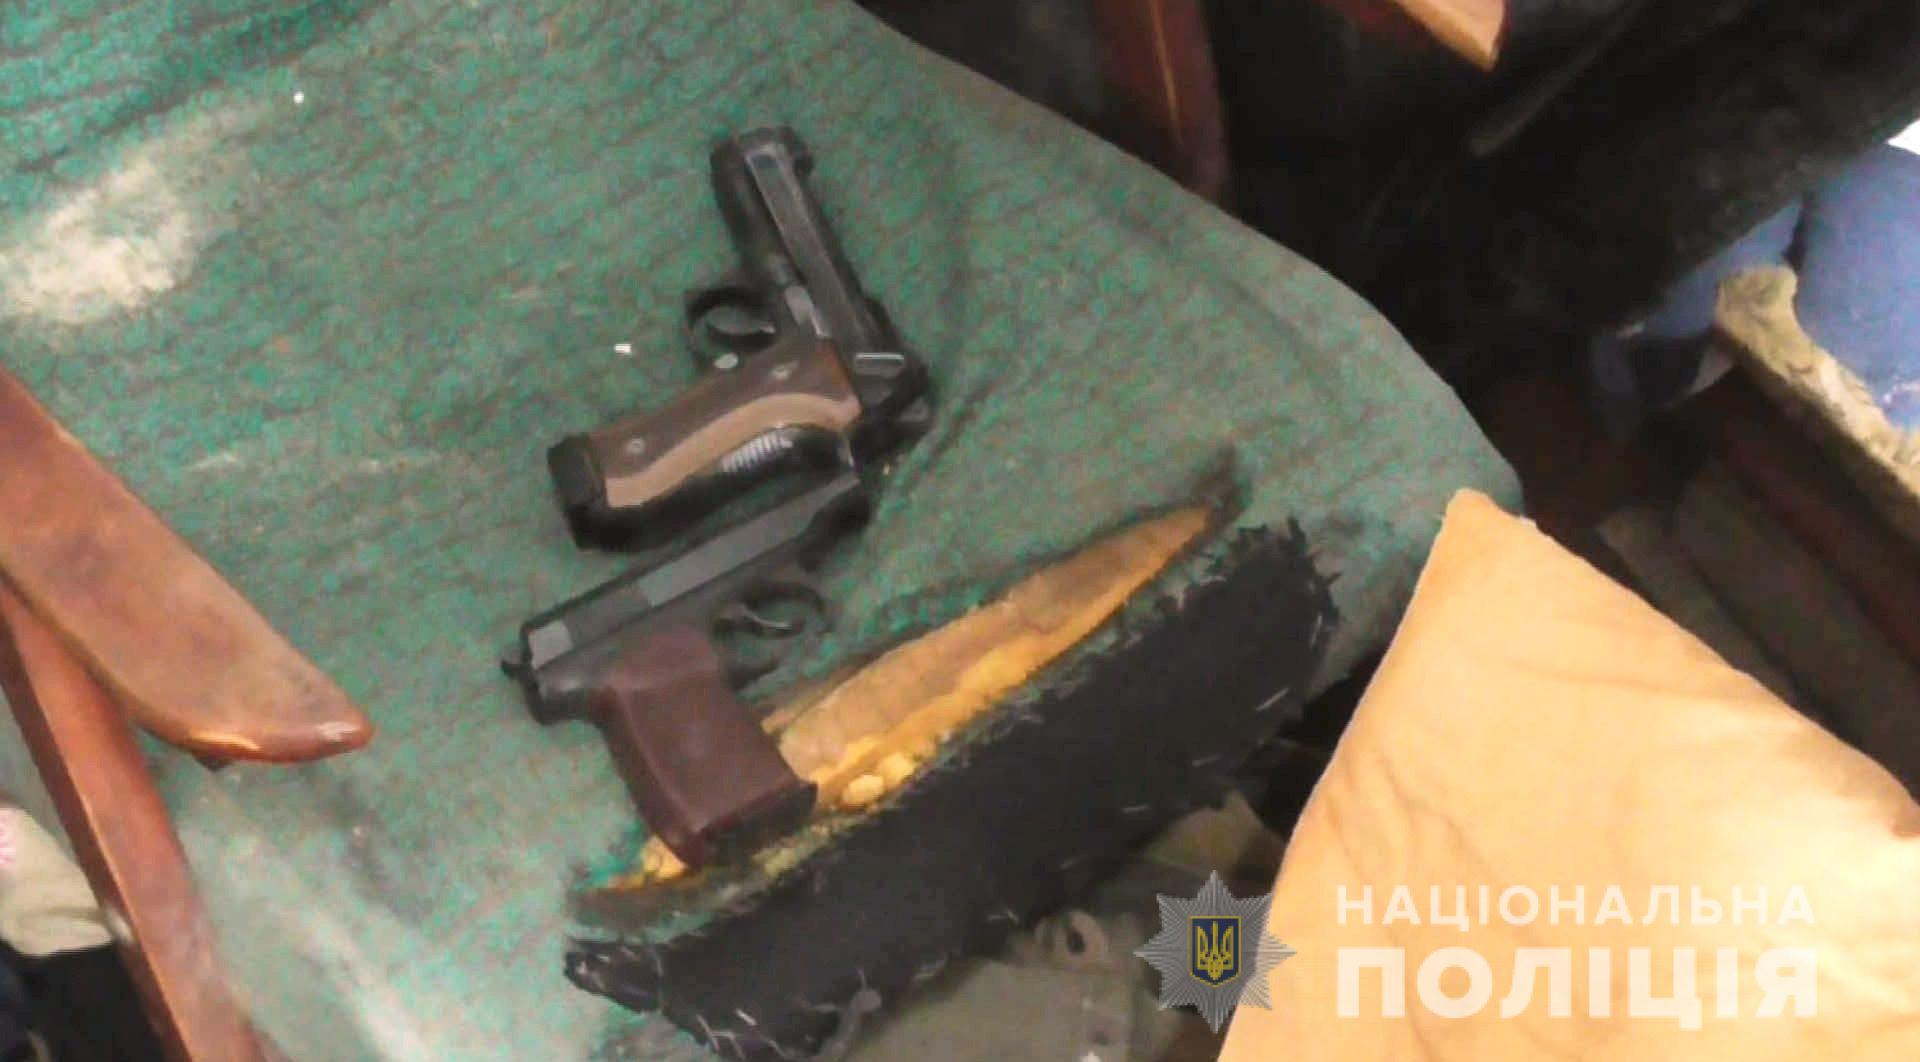 В Болграде у местного жителя изъяли арсенал оружия, боевую гранату и наркотики